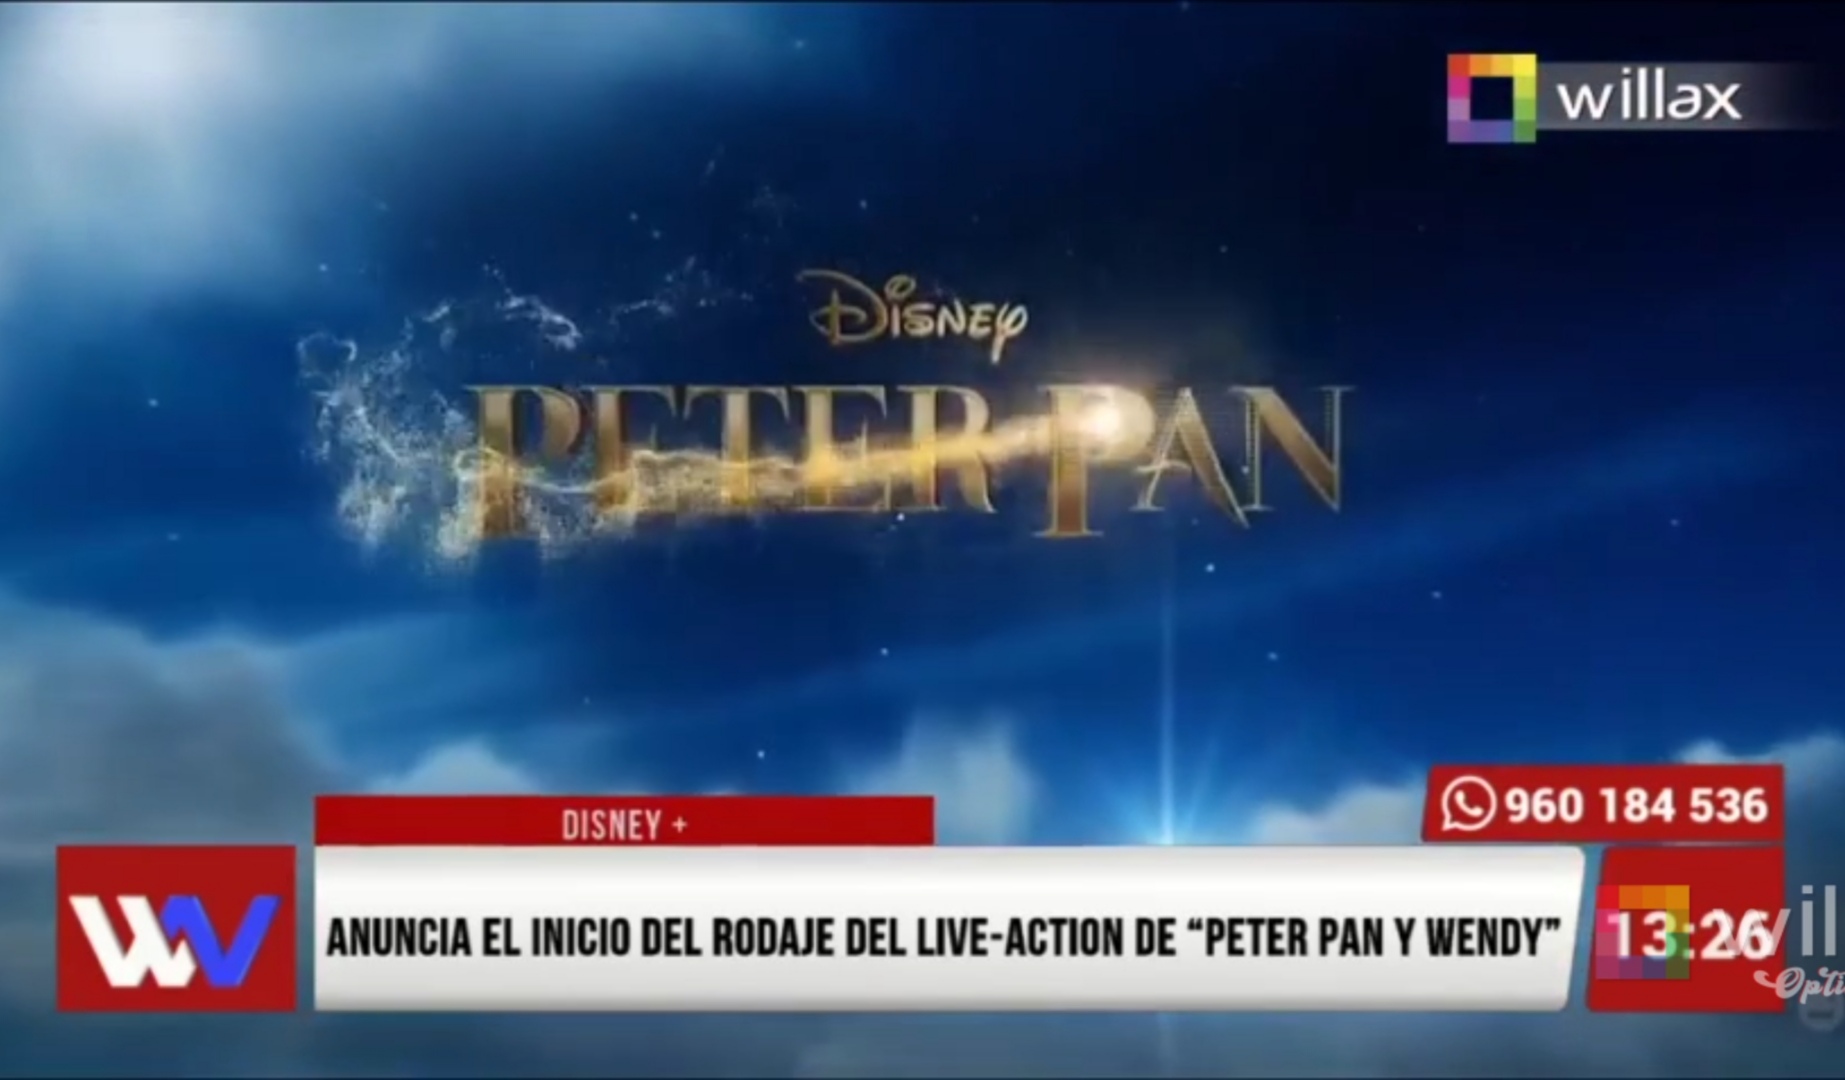 Portada: Disney+ anuncia el inicio del rodaje del live- action de “Peter Pan y Wendy”